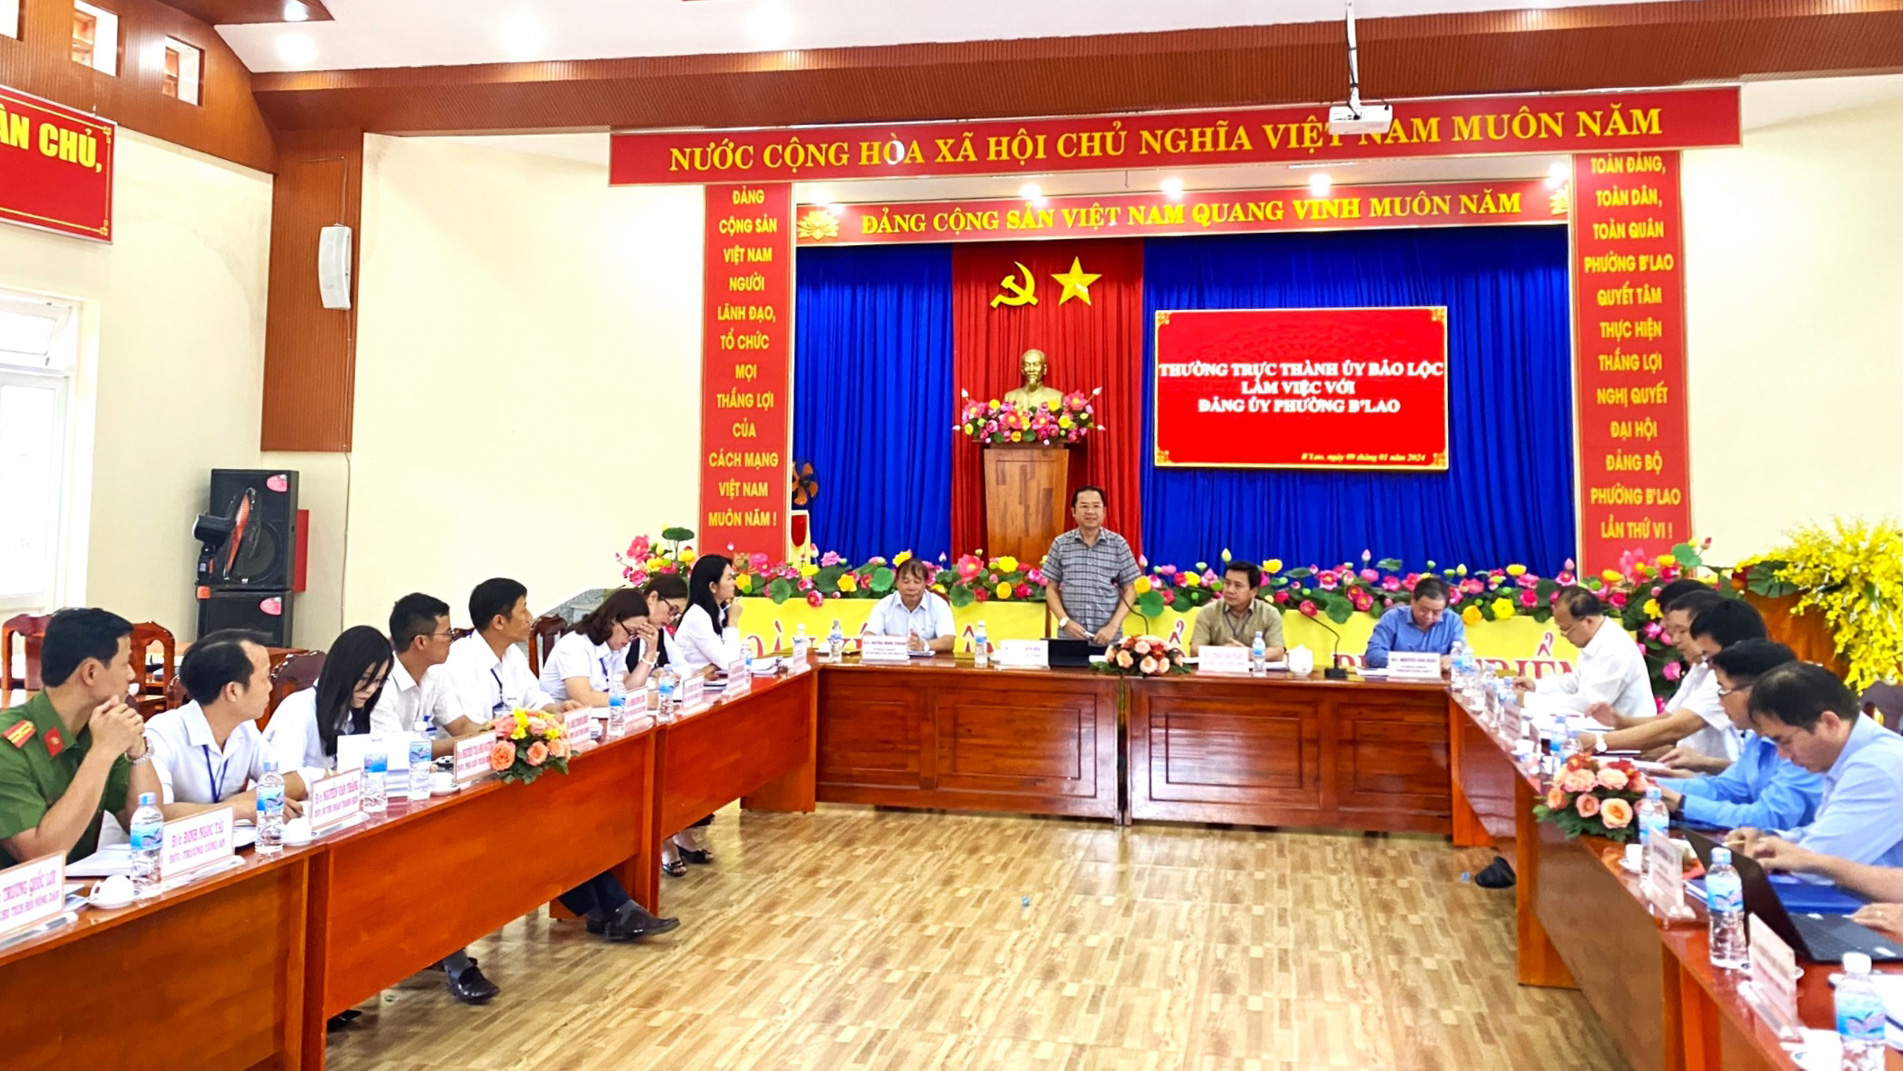 Đồng chí Tôn Thiện Đồng - Ủy viên Ban Thường vụ Tỉnh ủy, Bí thư Thành ủy Bảo Lộc làm việc với Đảng bộ, chính quyền phường BLao